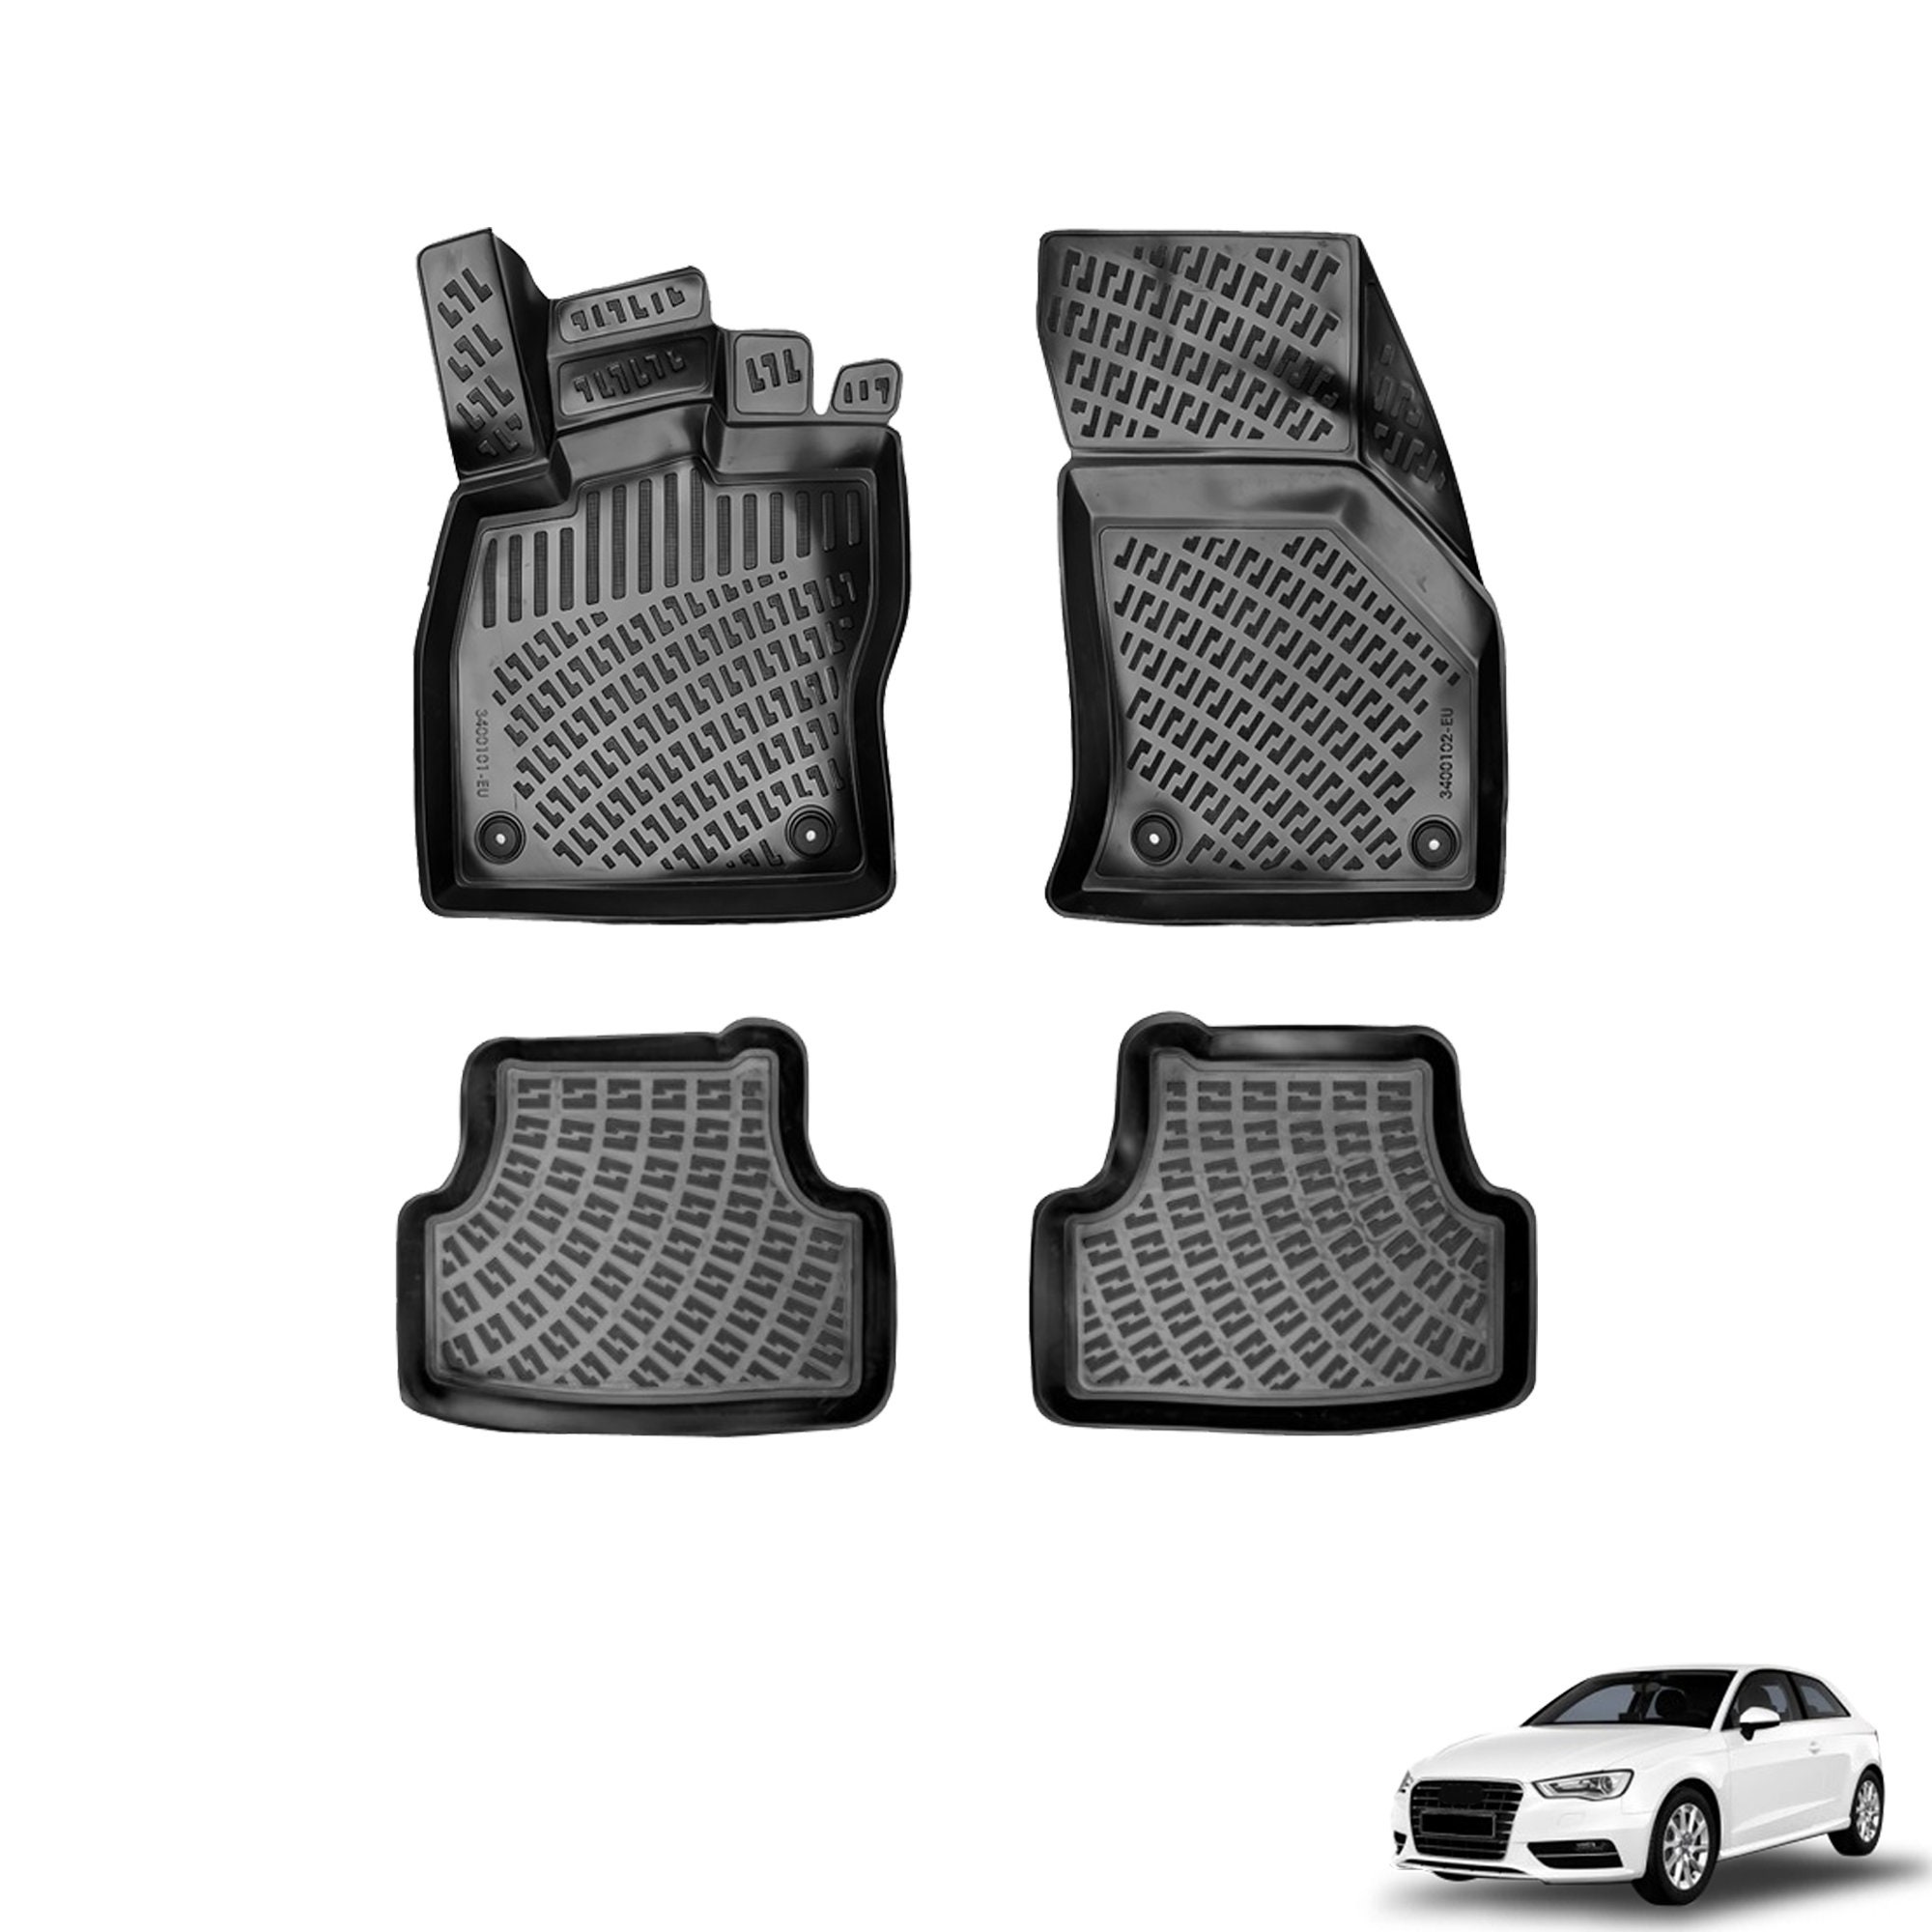 MXlab - ⚫️Covering noir mat ⚫️ sur la magnifique Audi S1